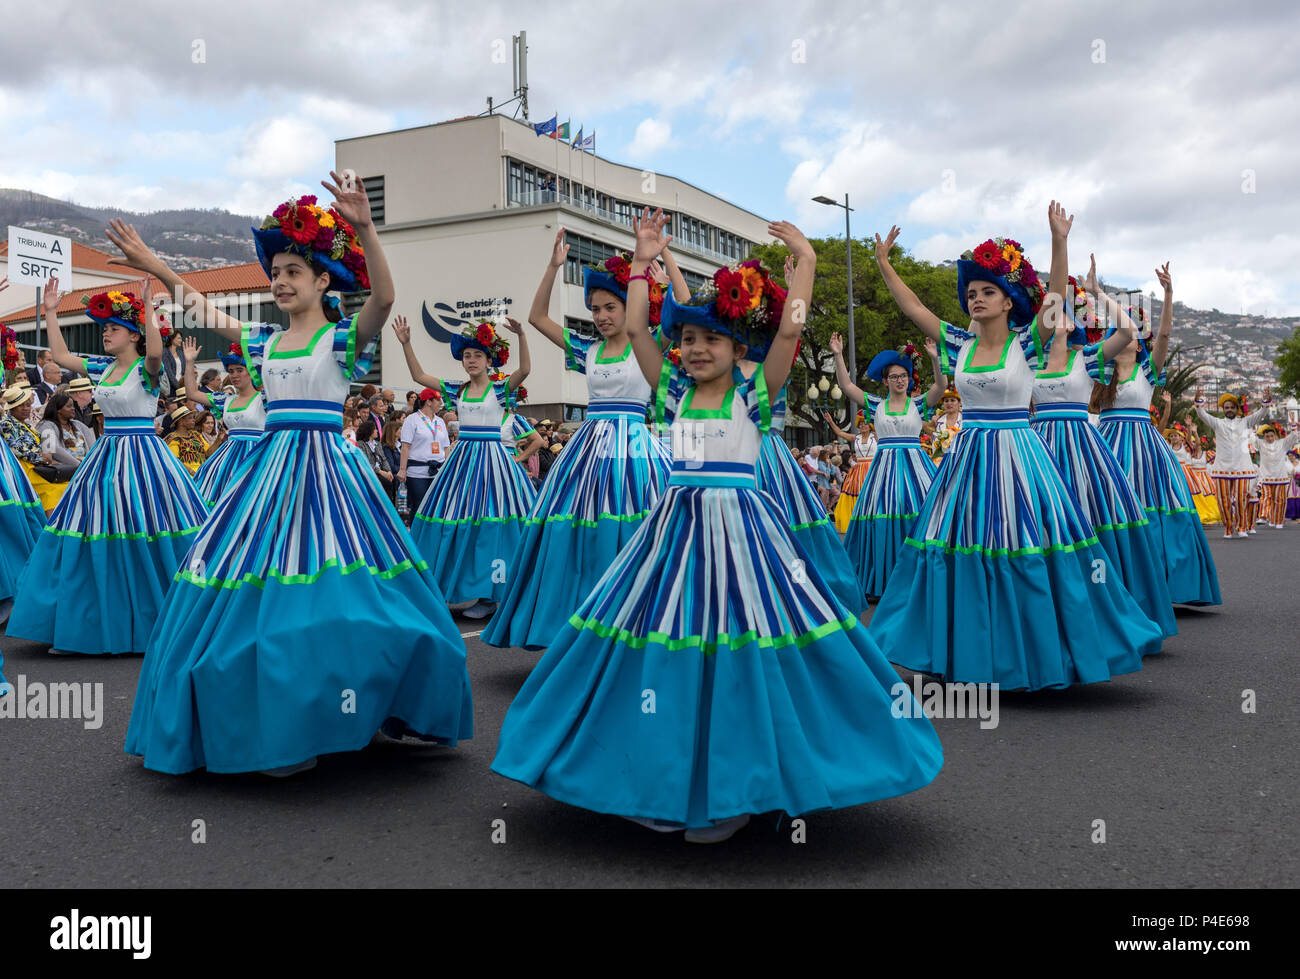 Las mujeres jóvenes con vestidos floreados y sombrero en el Spring Flower  Festival de Funchal, isla de Madeira, Portugal Fotografía de stock - Alamy